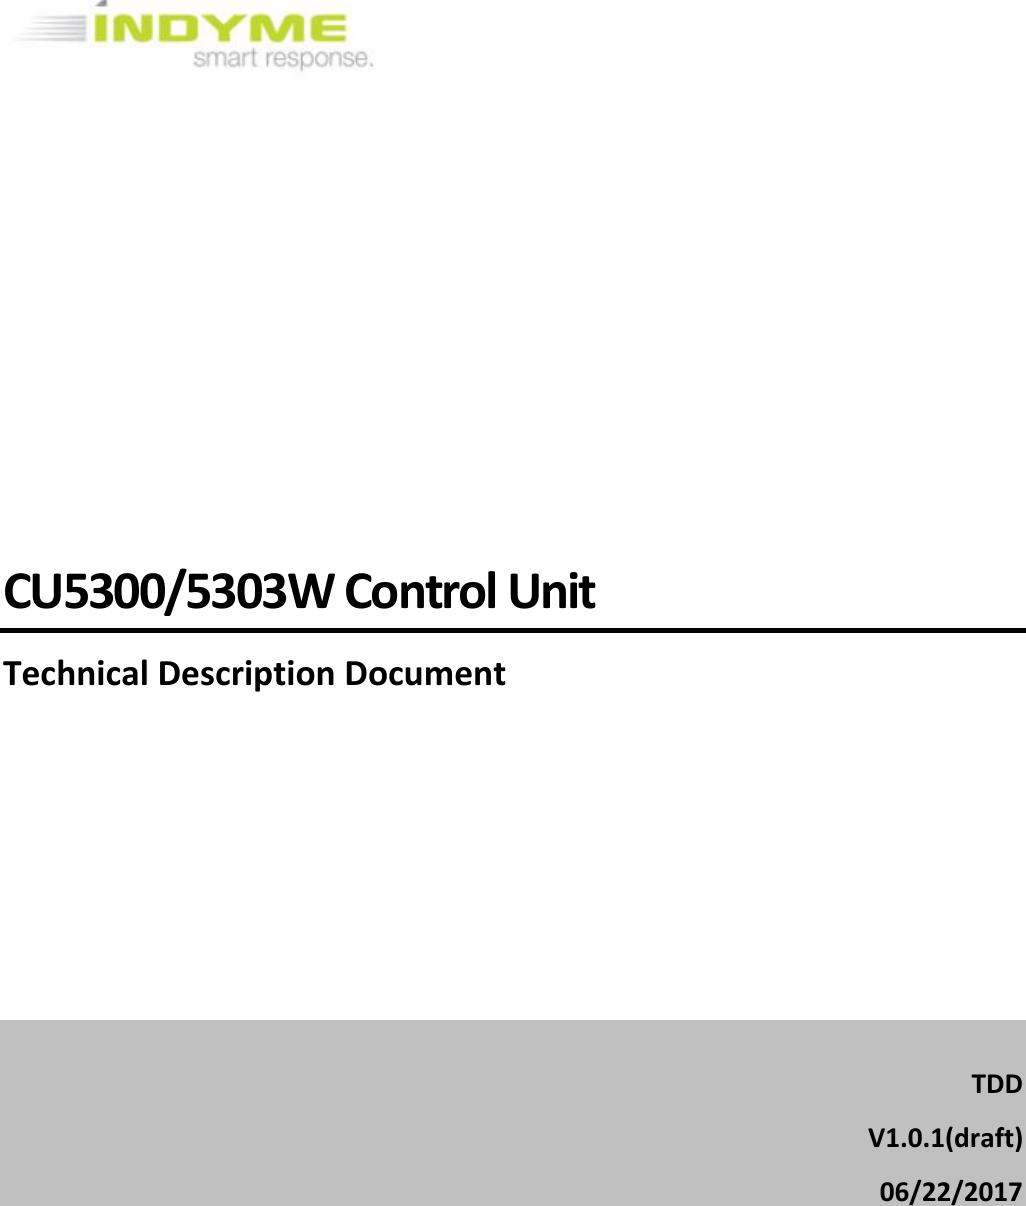            CU5300/5303W Control Unit Technical Description Document       TDD  V1.0.1(draft) 06/22/2017   